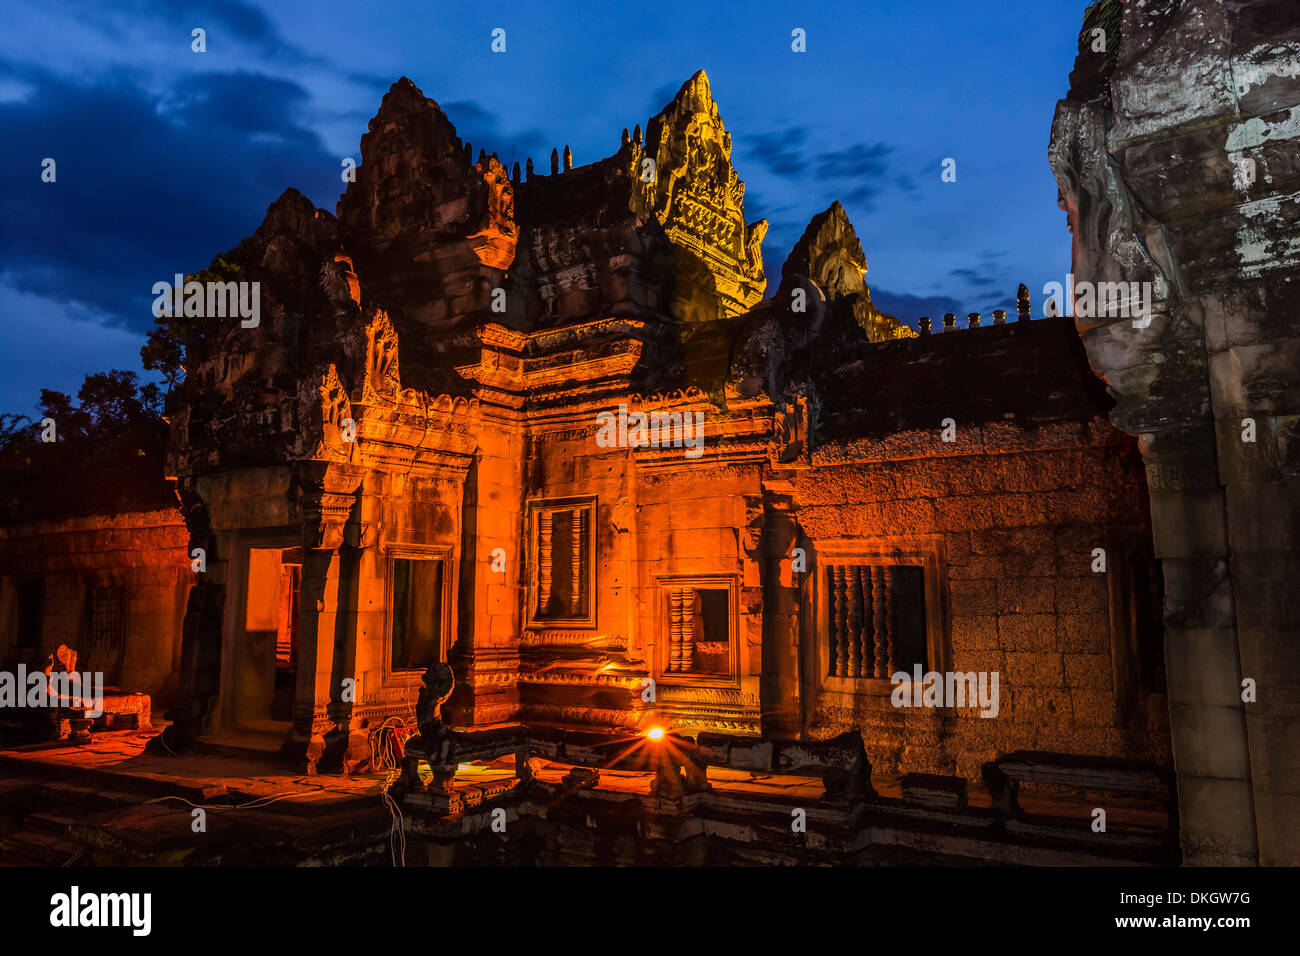 Banteay Samre Temple, Angkor, Site du patrimoine mondial de l'UNESCO, la Province de Siem Reap, Cambodge, Indochine, Asie du Sud, Asie Banque D'Images